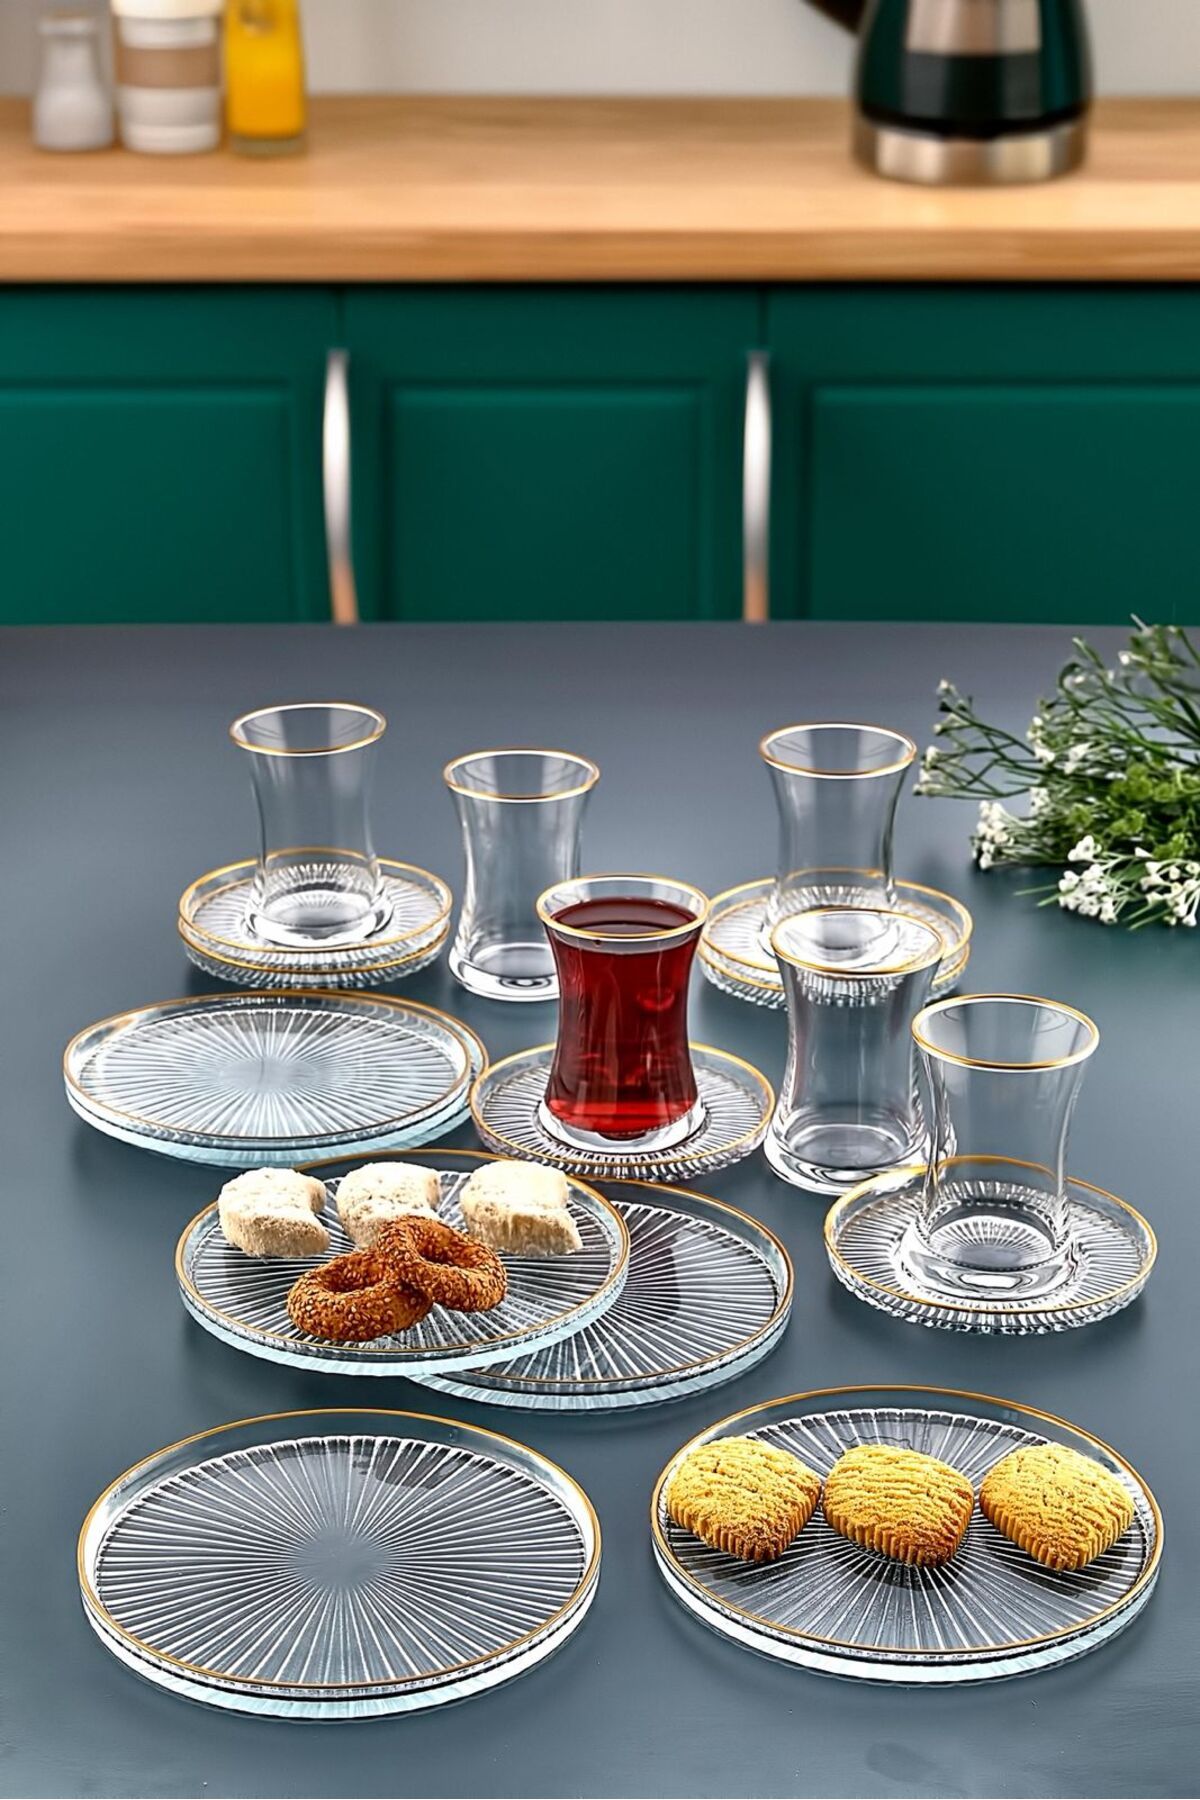 İLİVA 18 Parça 6 Kişilik Gold Yaldızlı Çay Seti Takımı - Pasta tabağı, Çay Bardağı, Çay Tabağı